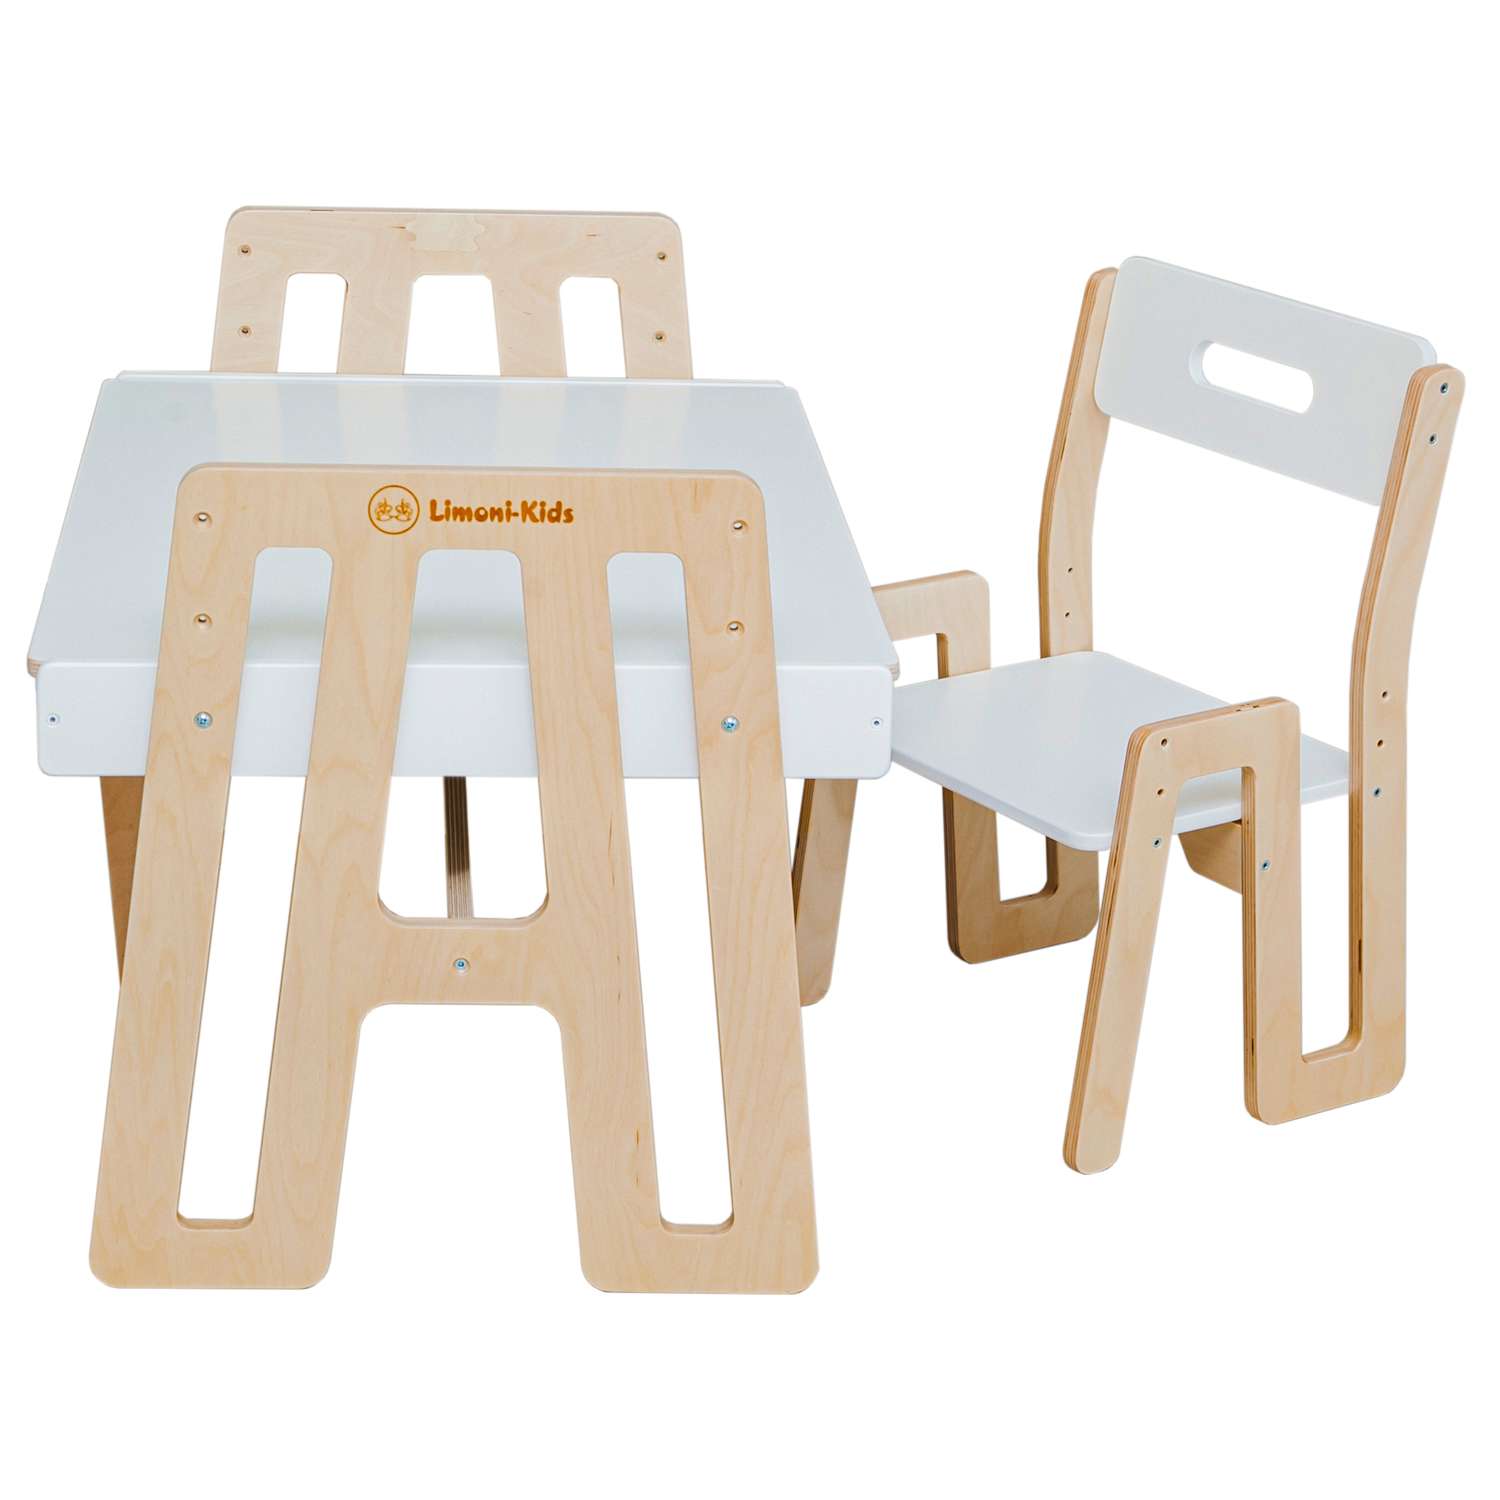 Комплект детской мебели Limoni-Kids Растущий стульчик и столик с грифельной доской и контейнерами - фото 1